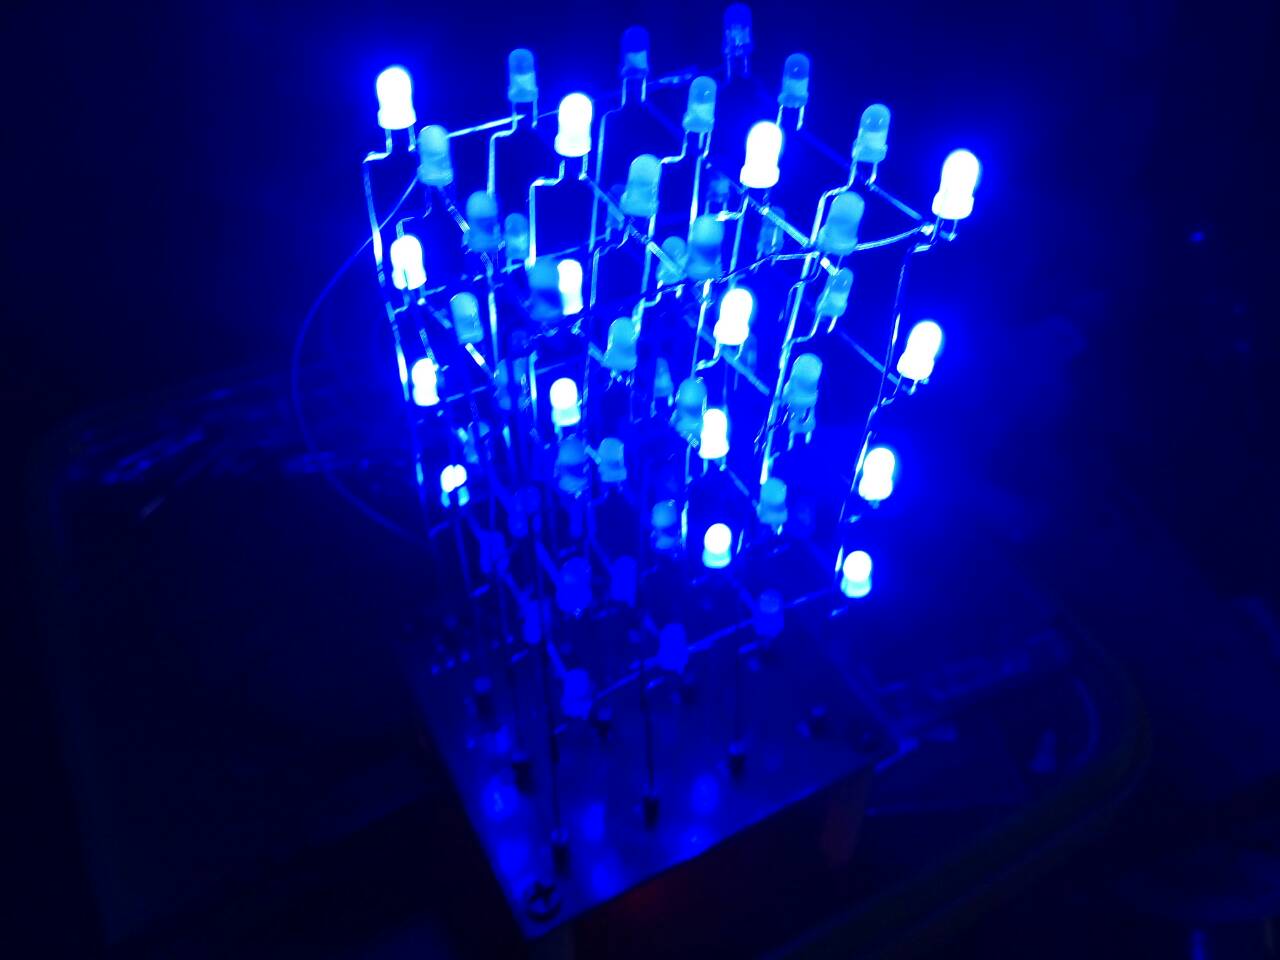 芭蕉葉上聽雨聲 [玩轉光立方] LED Cube 4x4x4 for Arduino Nano 組裝教學